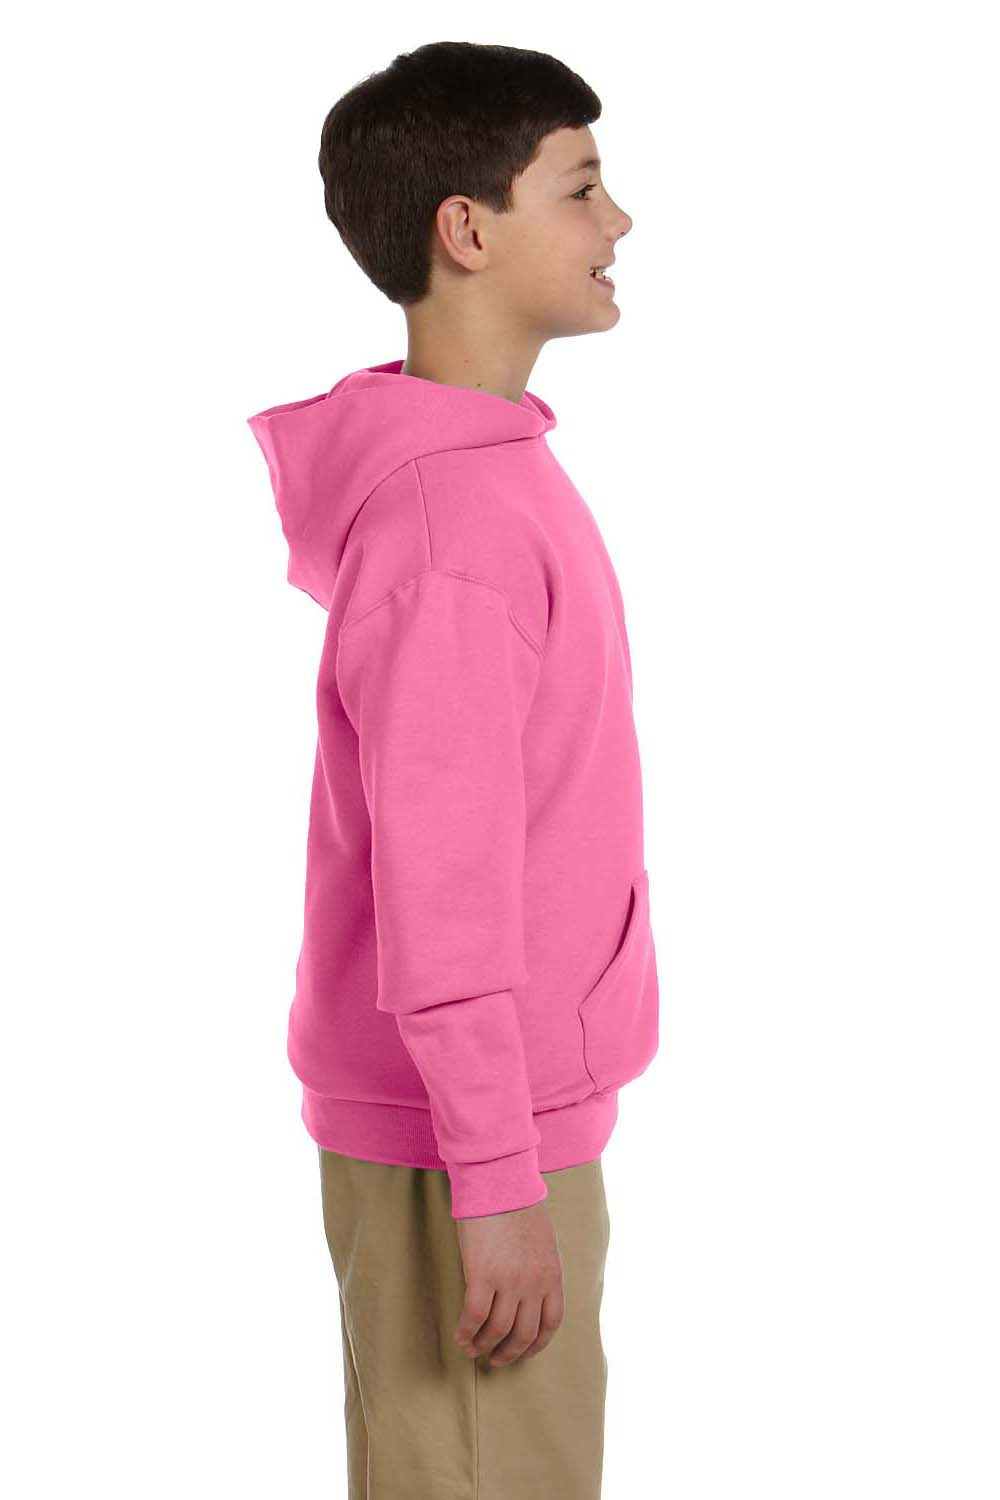 Jerzees 996Y Youth NuBlend Fleece Hooded Sweatshirt Hoodie Neon Pink Side